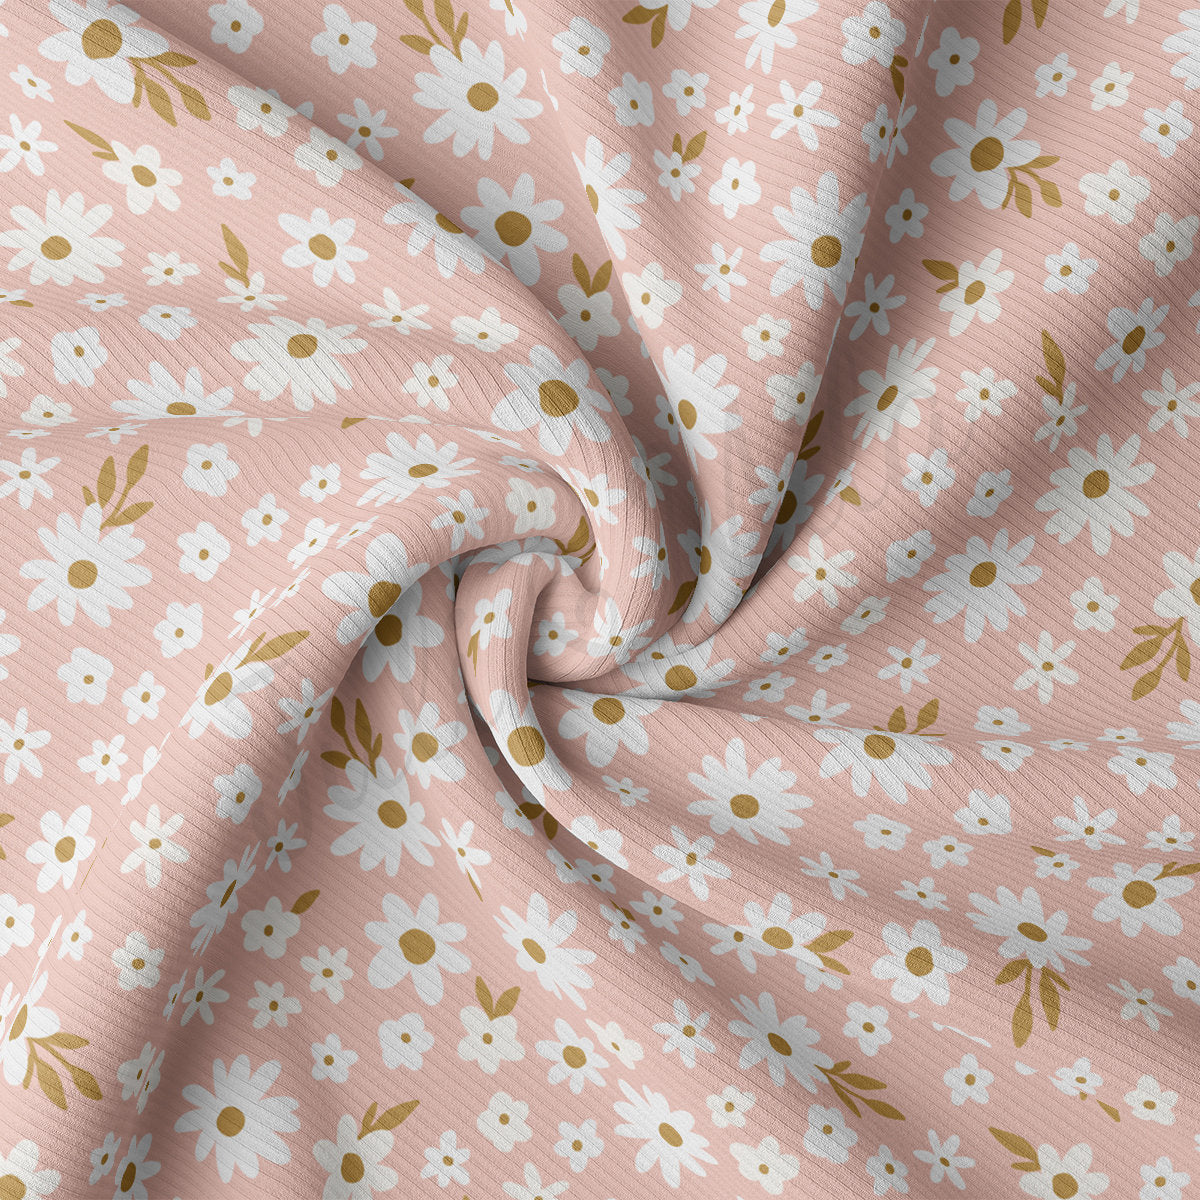 Rib Knit Fabric  RBK2439 Floral